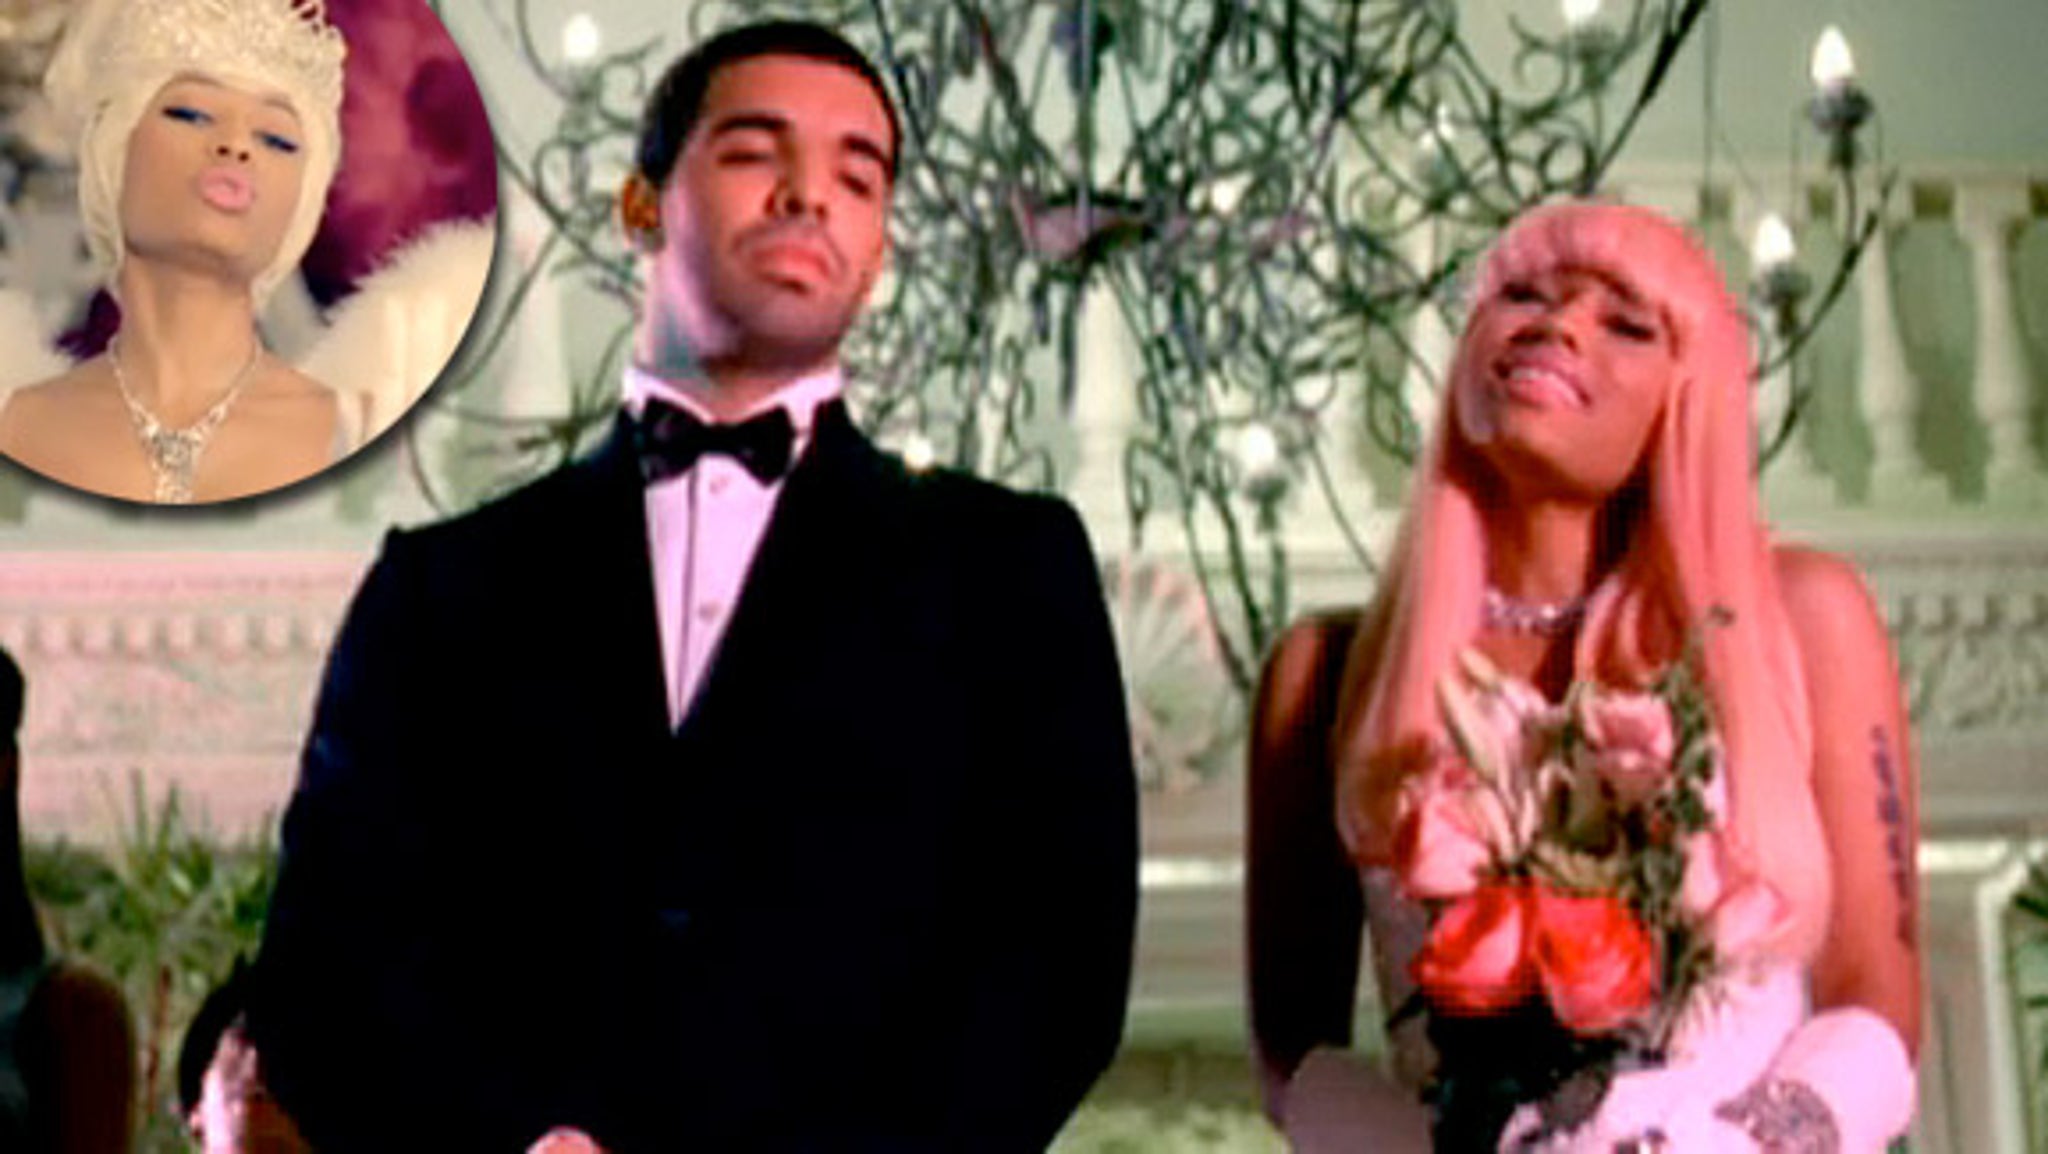 Hot Video Nicki Minaj Marries Drake In Moment 4 Life